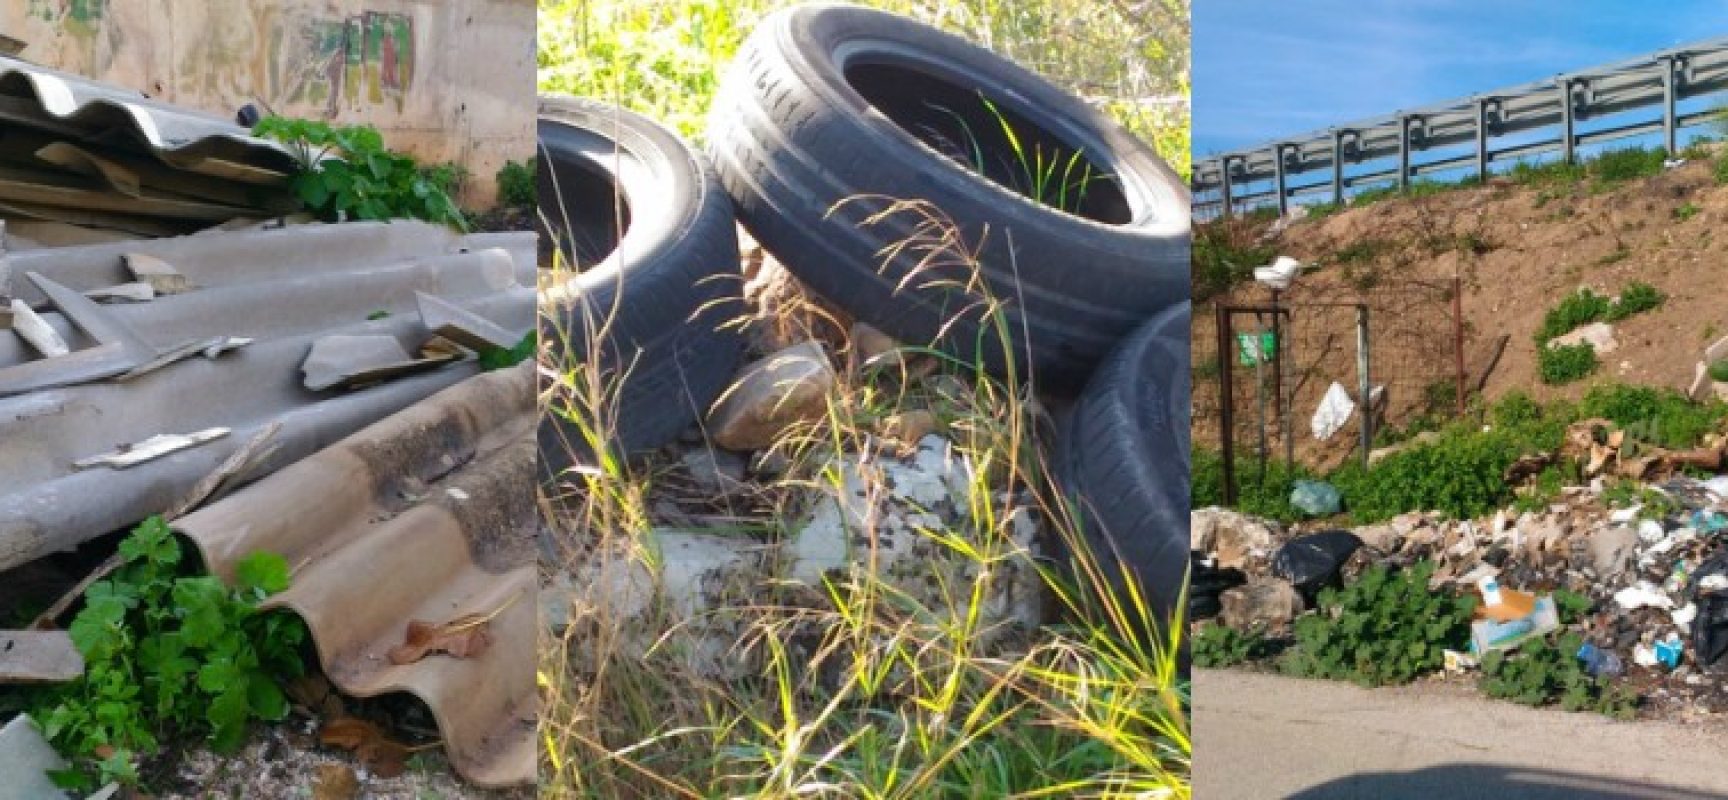 Federazione Pro Natura: “Continua l’abbandono illegale di rifiuti, c’è anche amianto” / FOTO